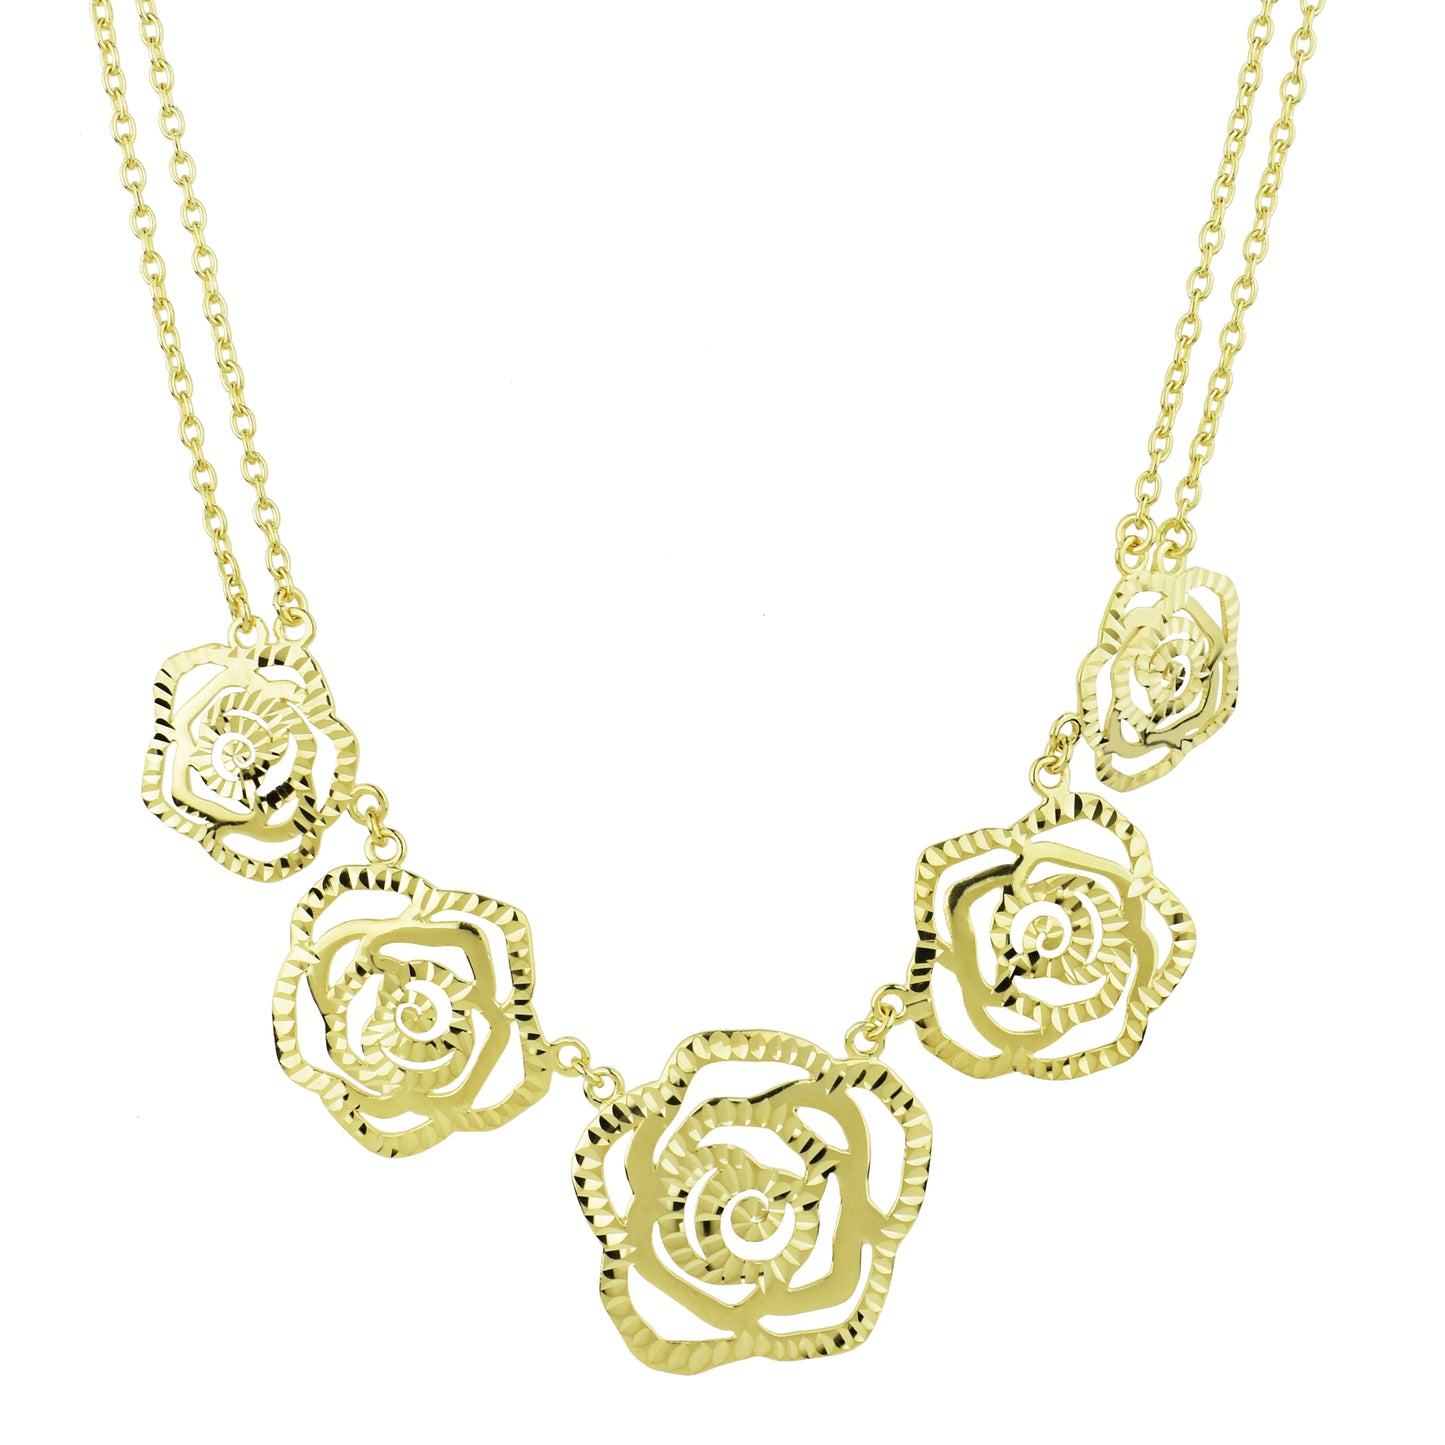 Séchic 14k Five Diamond Cut Roses Necklace 18"